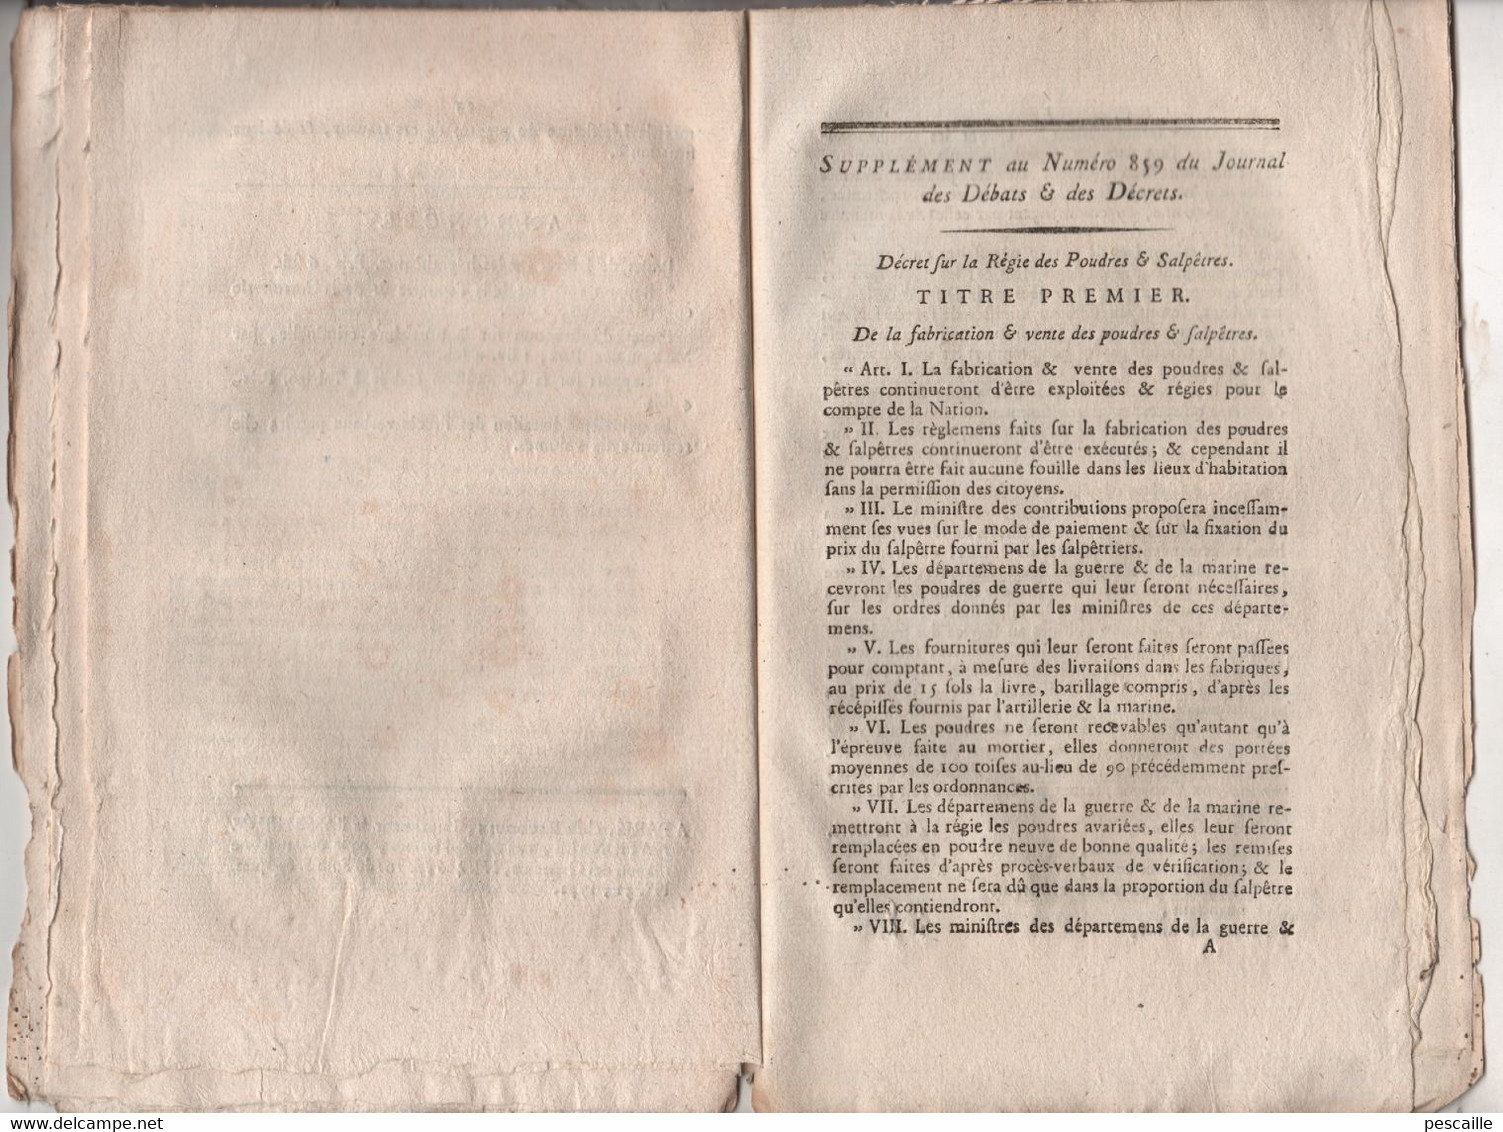 REVOLUTION FRANCAISE JOURNAL DES DEBATS 26 09 1791 - LOIS RURALES - GARDES CHAMPETRES - ROUEN - POUDRES SALPETRES - Journaux Anciens - Avant 1800